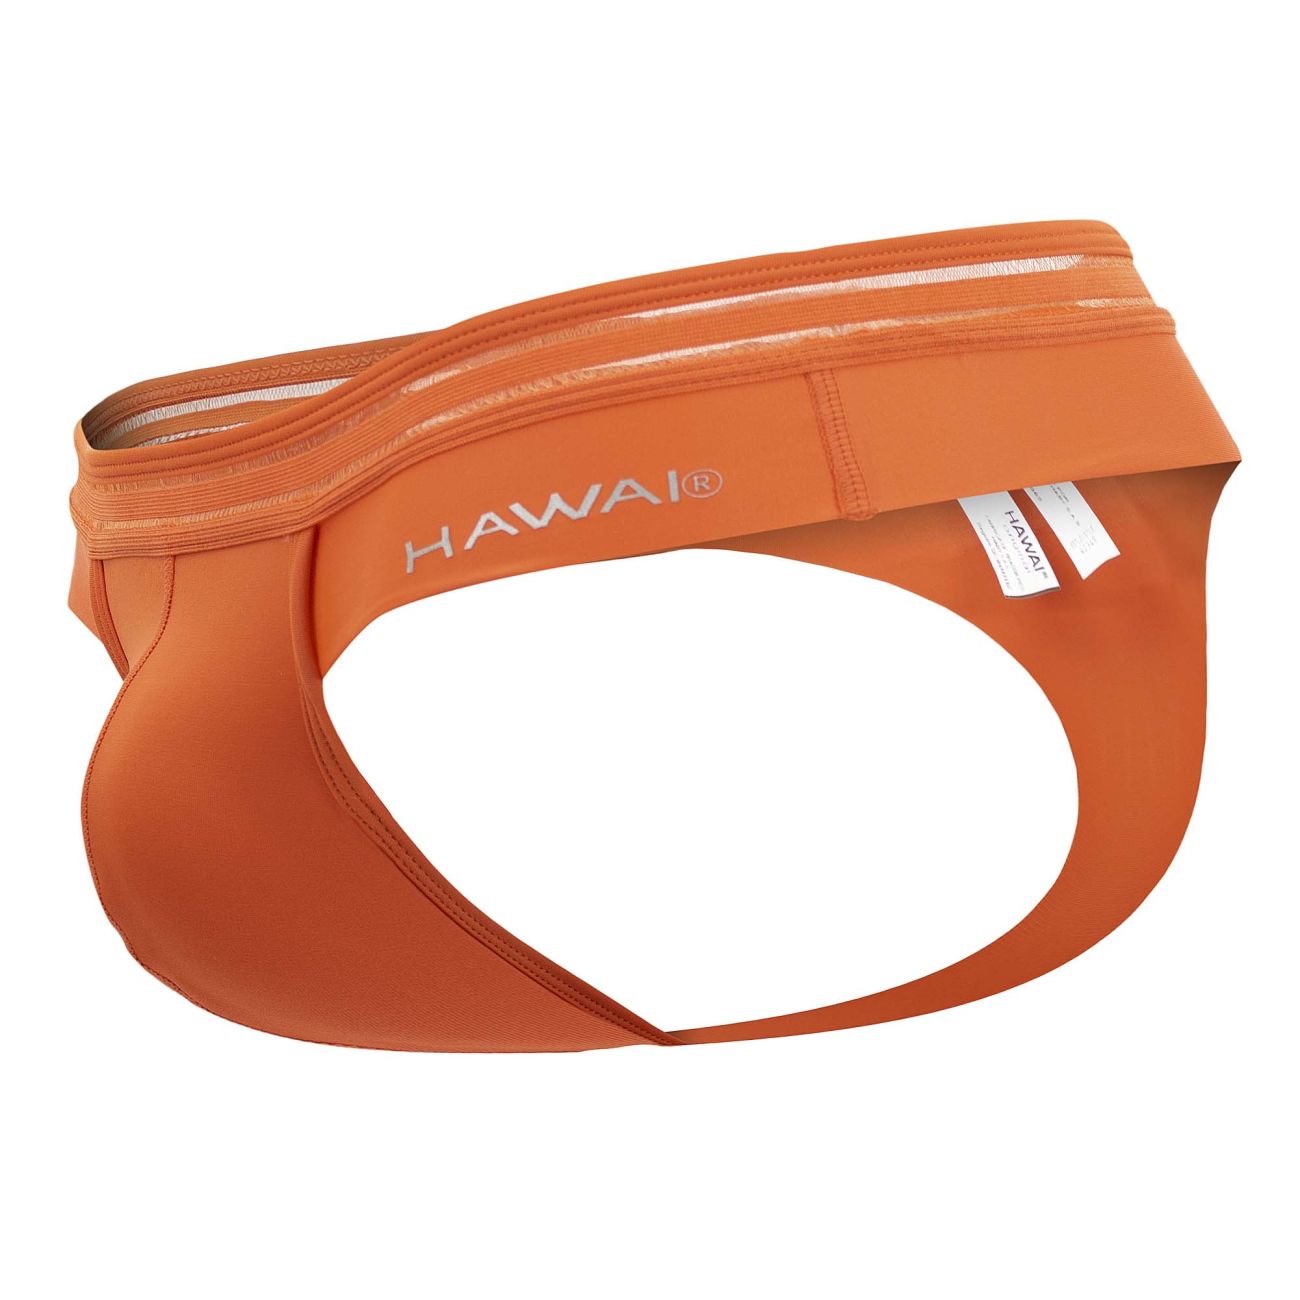 HAWAI 42348 Microfiber Thongs